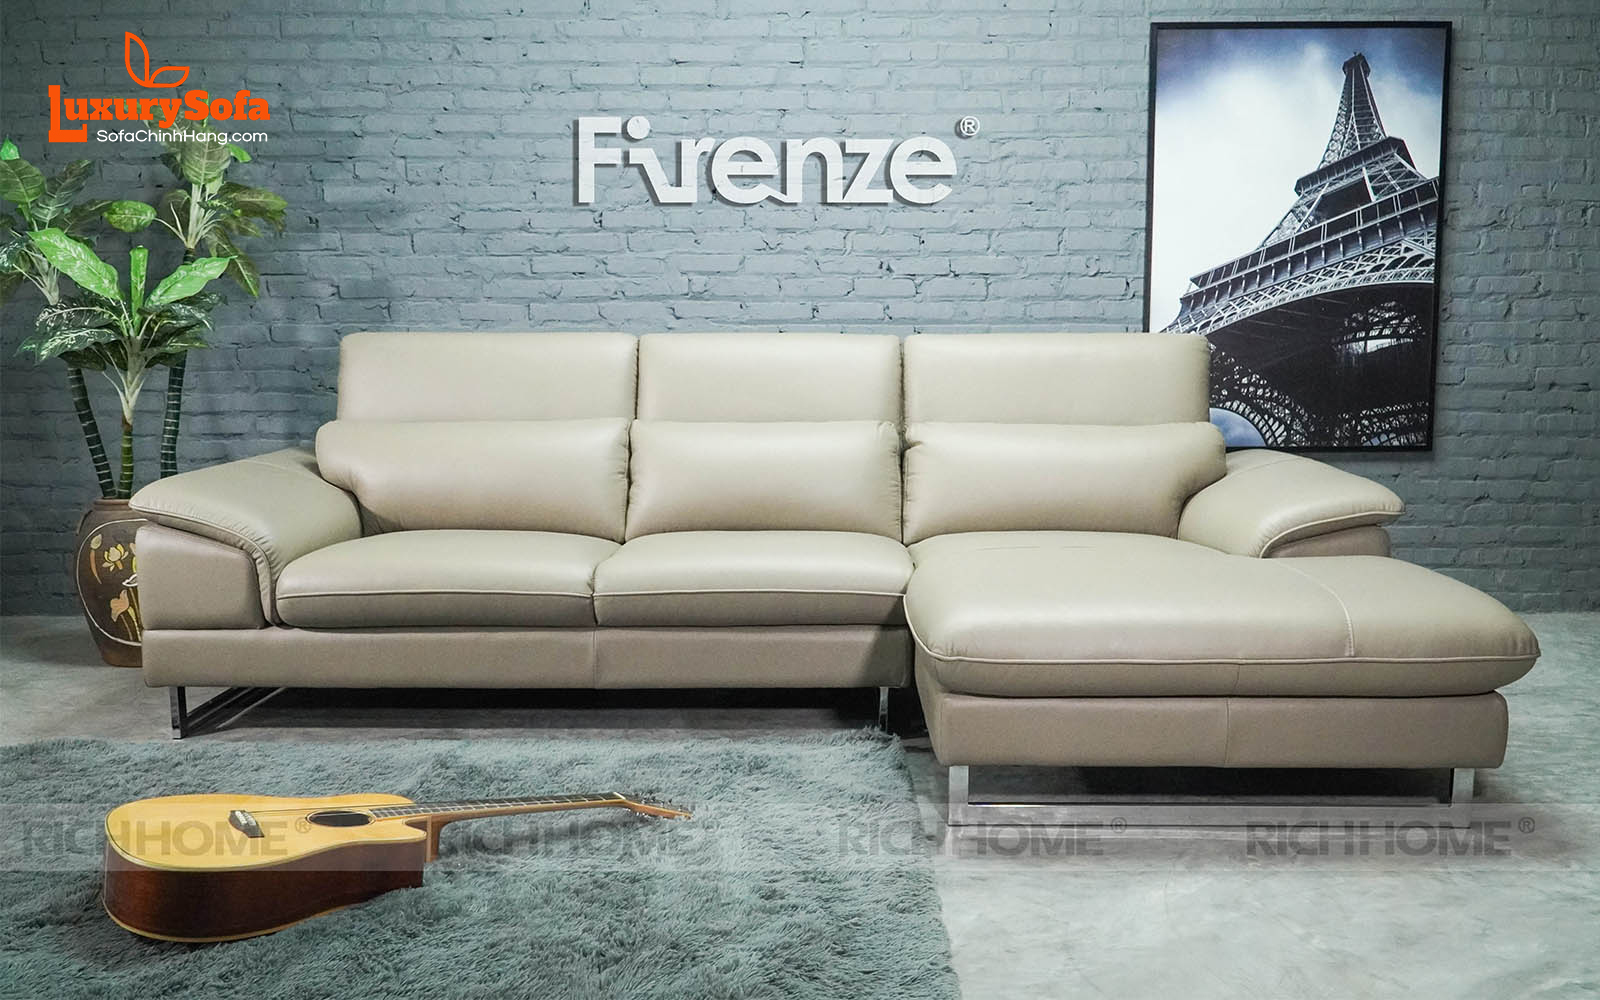 Top 10 mẫu ghế sofa màu xám lông chuột cho phòng khách hiện đại